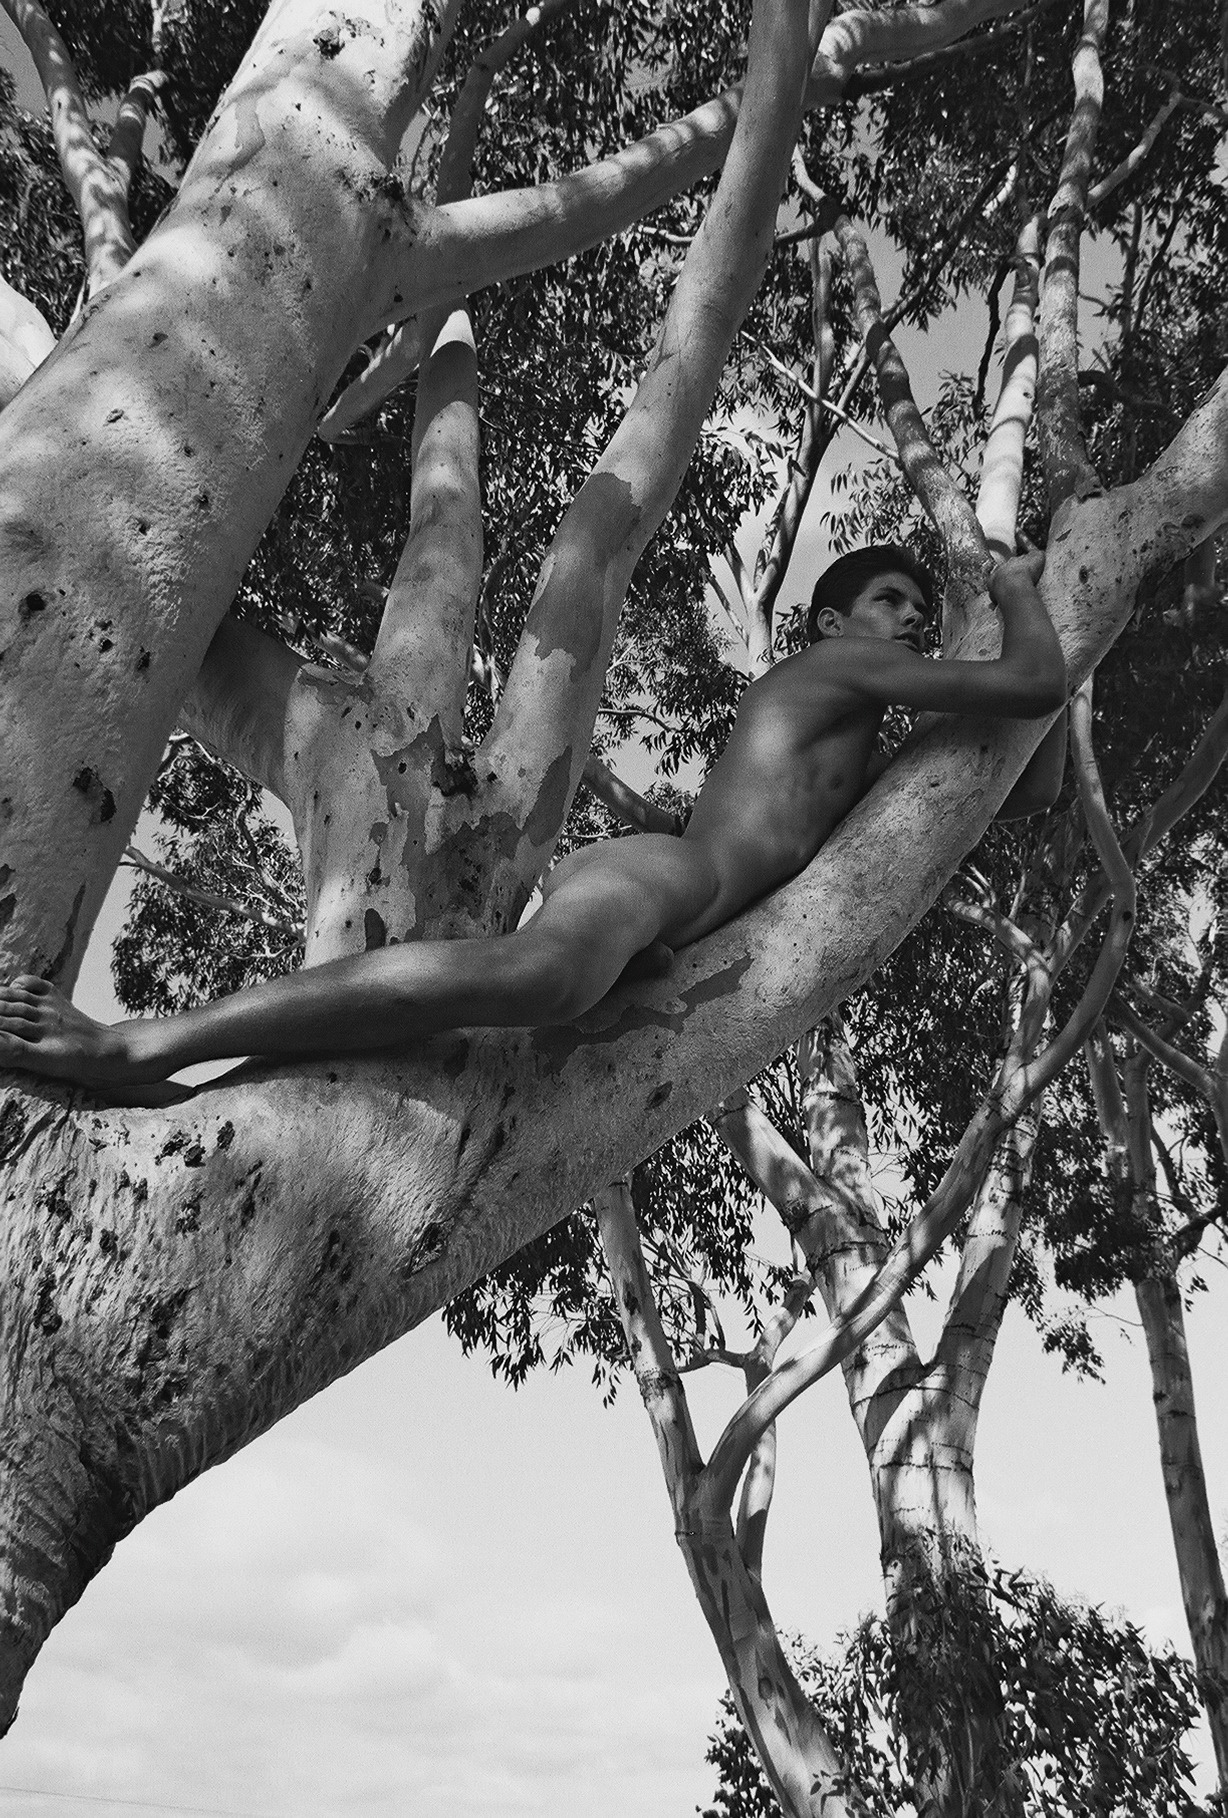 November 14, 2013   Nude Tree
Naked on a limb